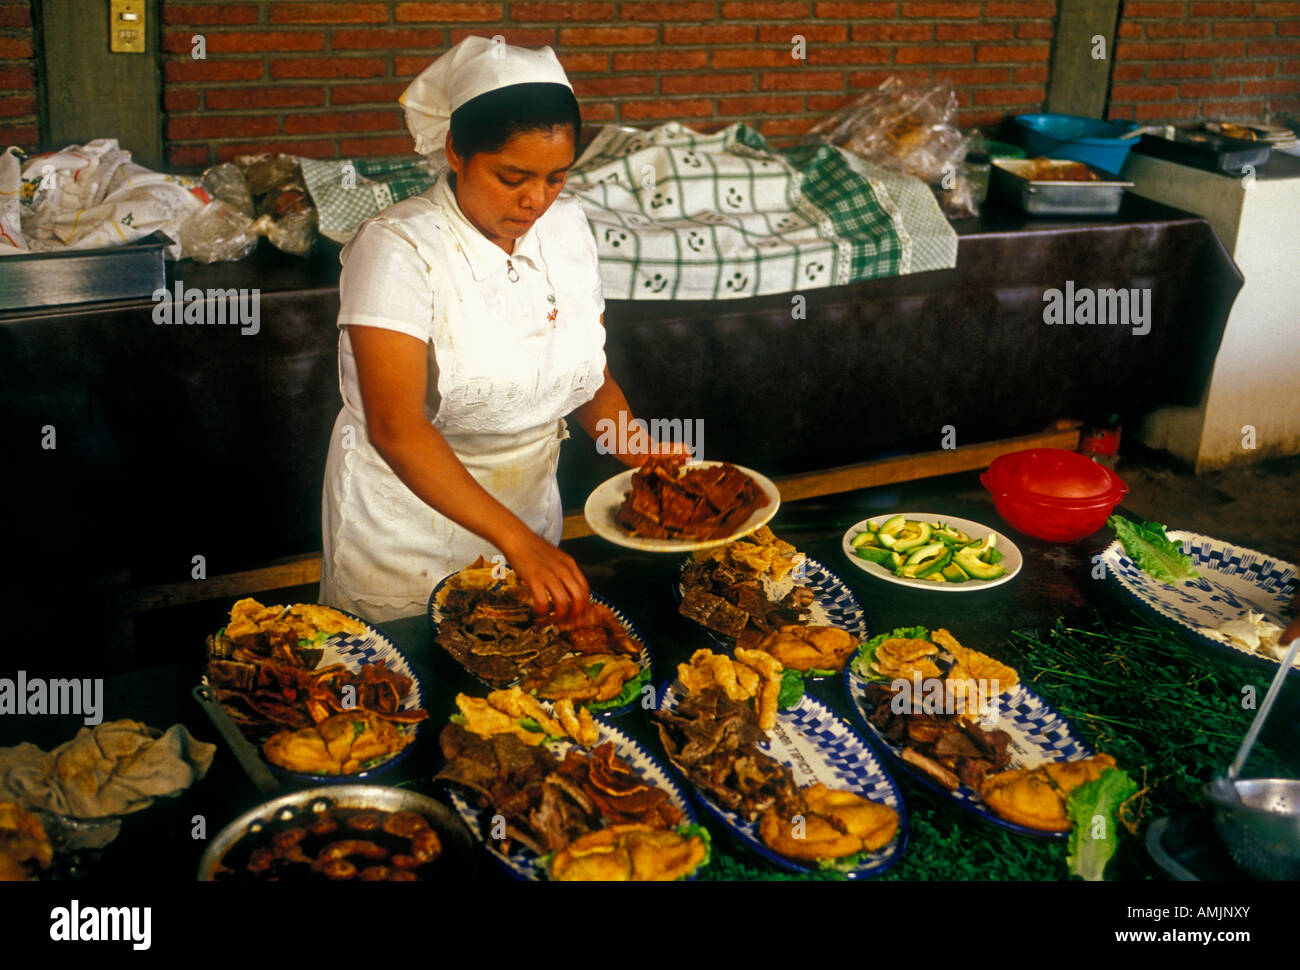 Femme mexicaine, cuisinier, la cuisine, la préparation des aliments, la nourriture mexicaine et verre, restaurant mexicain, Restaurant La Capilla, Zaachila, État de Oaxaca, Mexique Banque D'Images